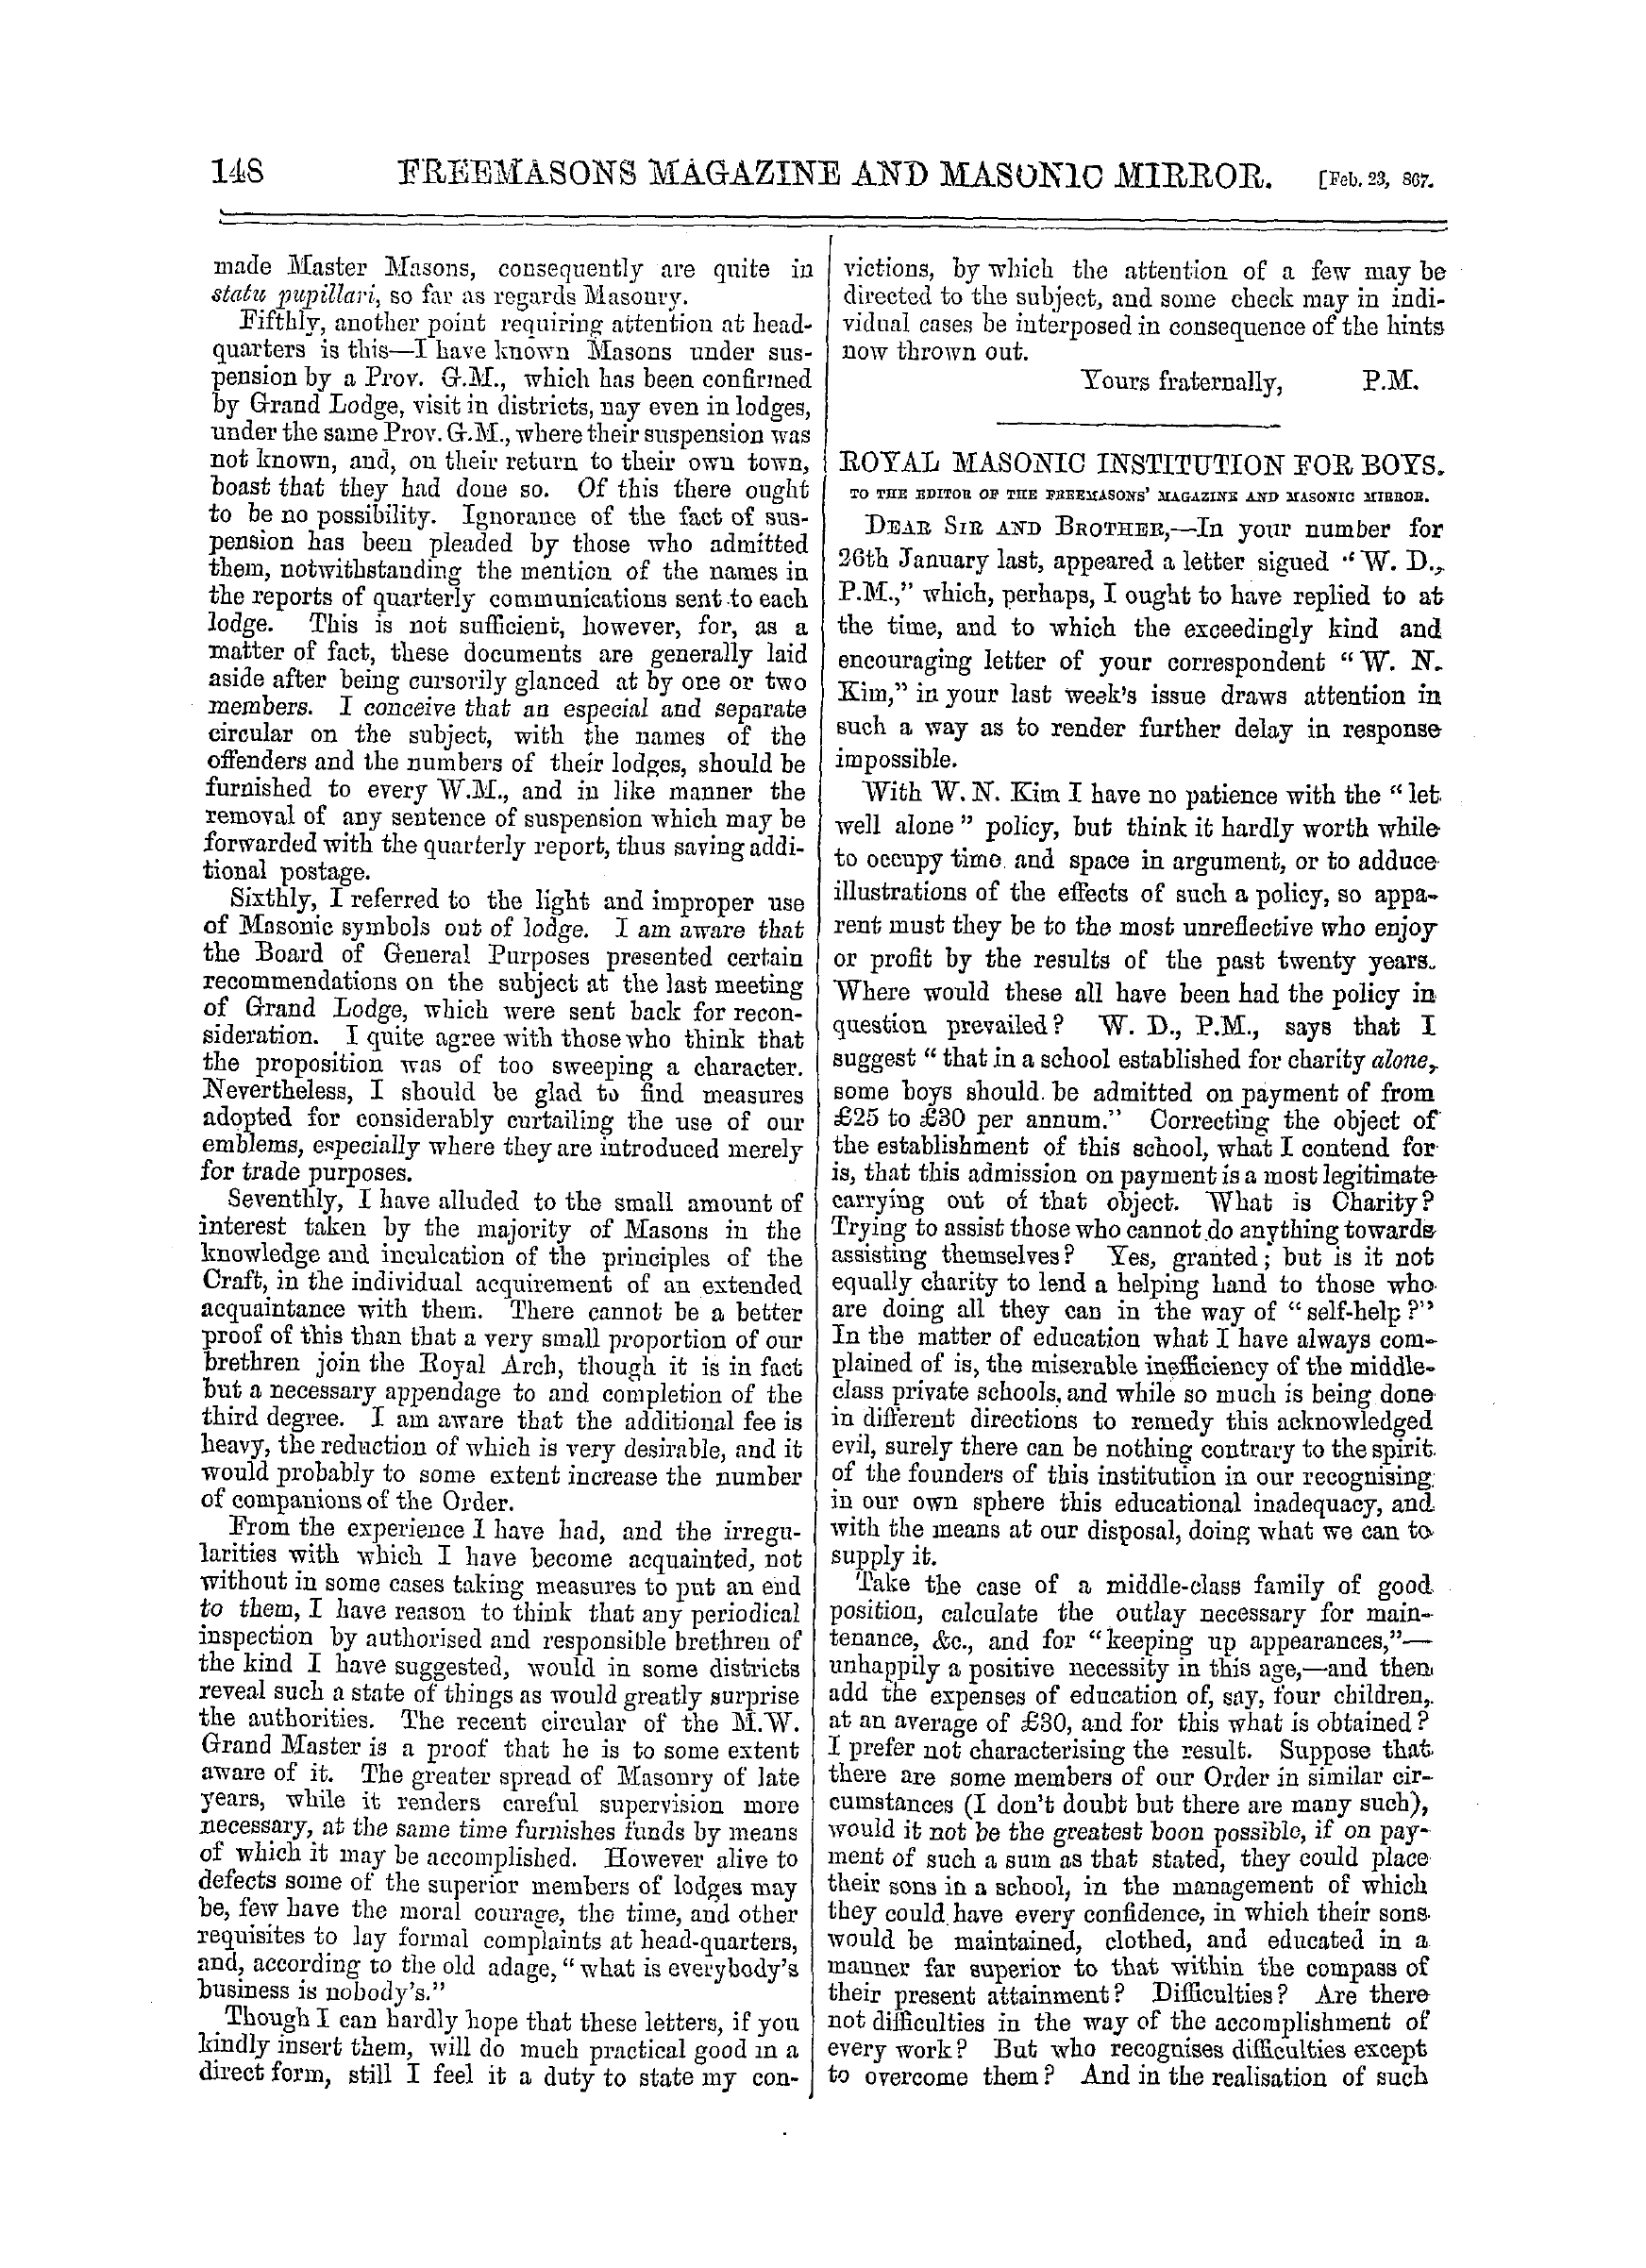 The Freemasons' Monthly Magazine: 1867-02-23: 8